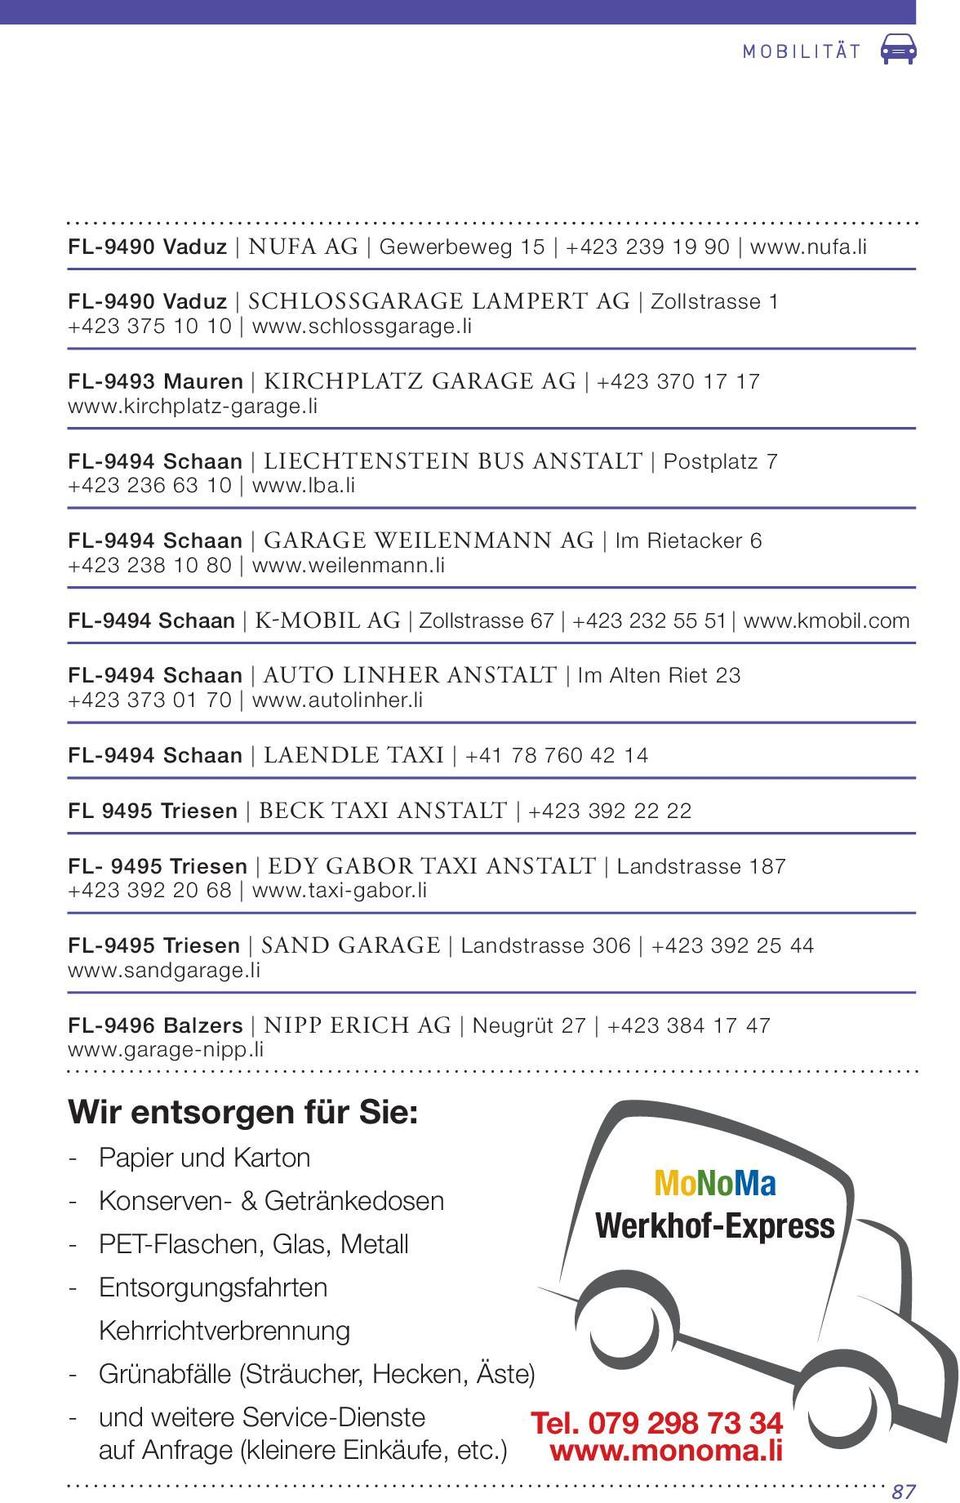 li FL-9494 Schaan GARAGE WEILENMANN AG Im Rietacker 6 +423 238 10 80 www.weilenmann.li FL-9494 Schaan K-MOBIL AG Zollstrasse 67 +423 232 55 51 www.kmobil.